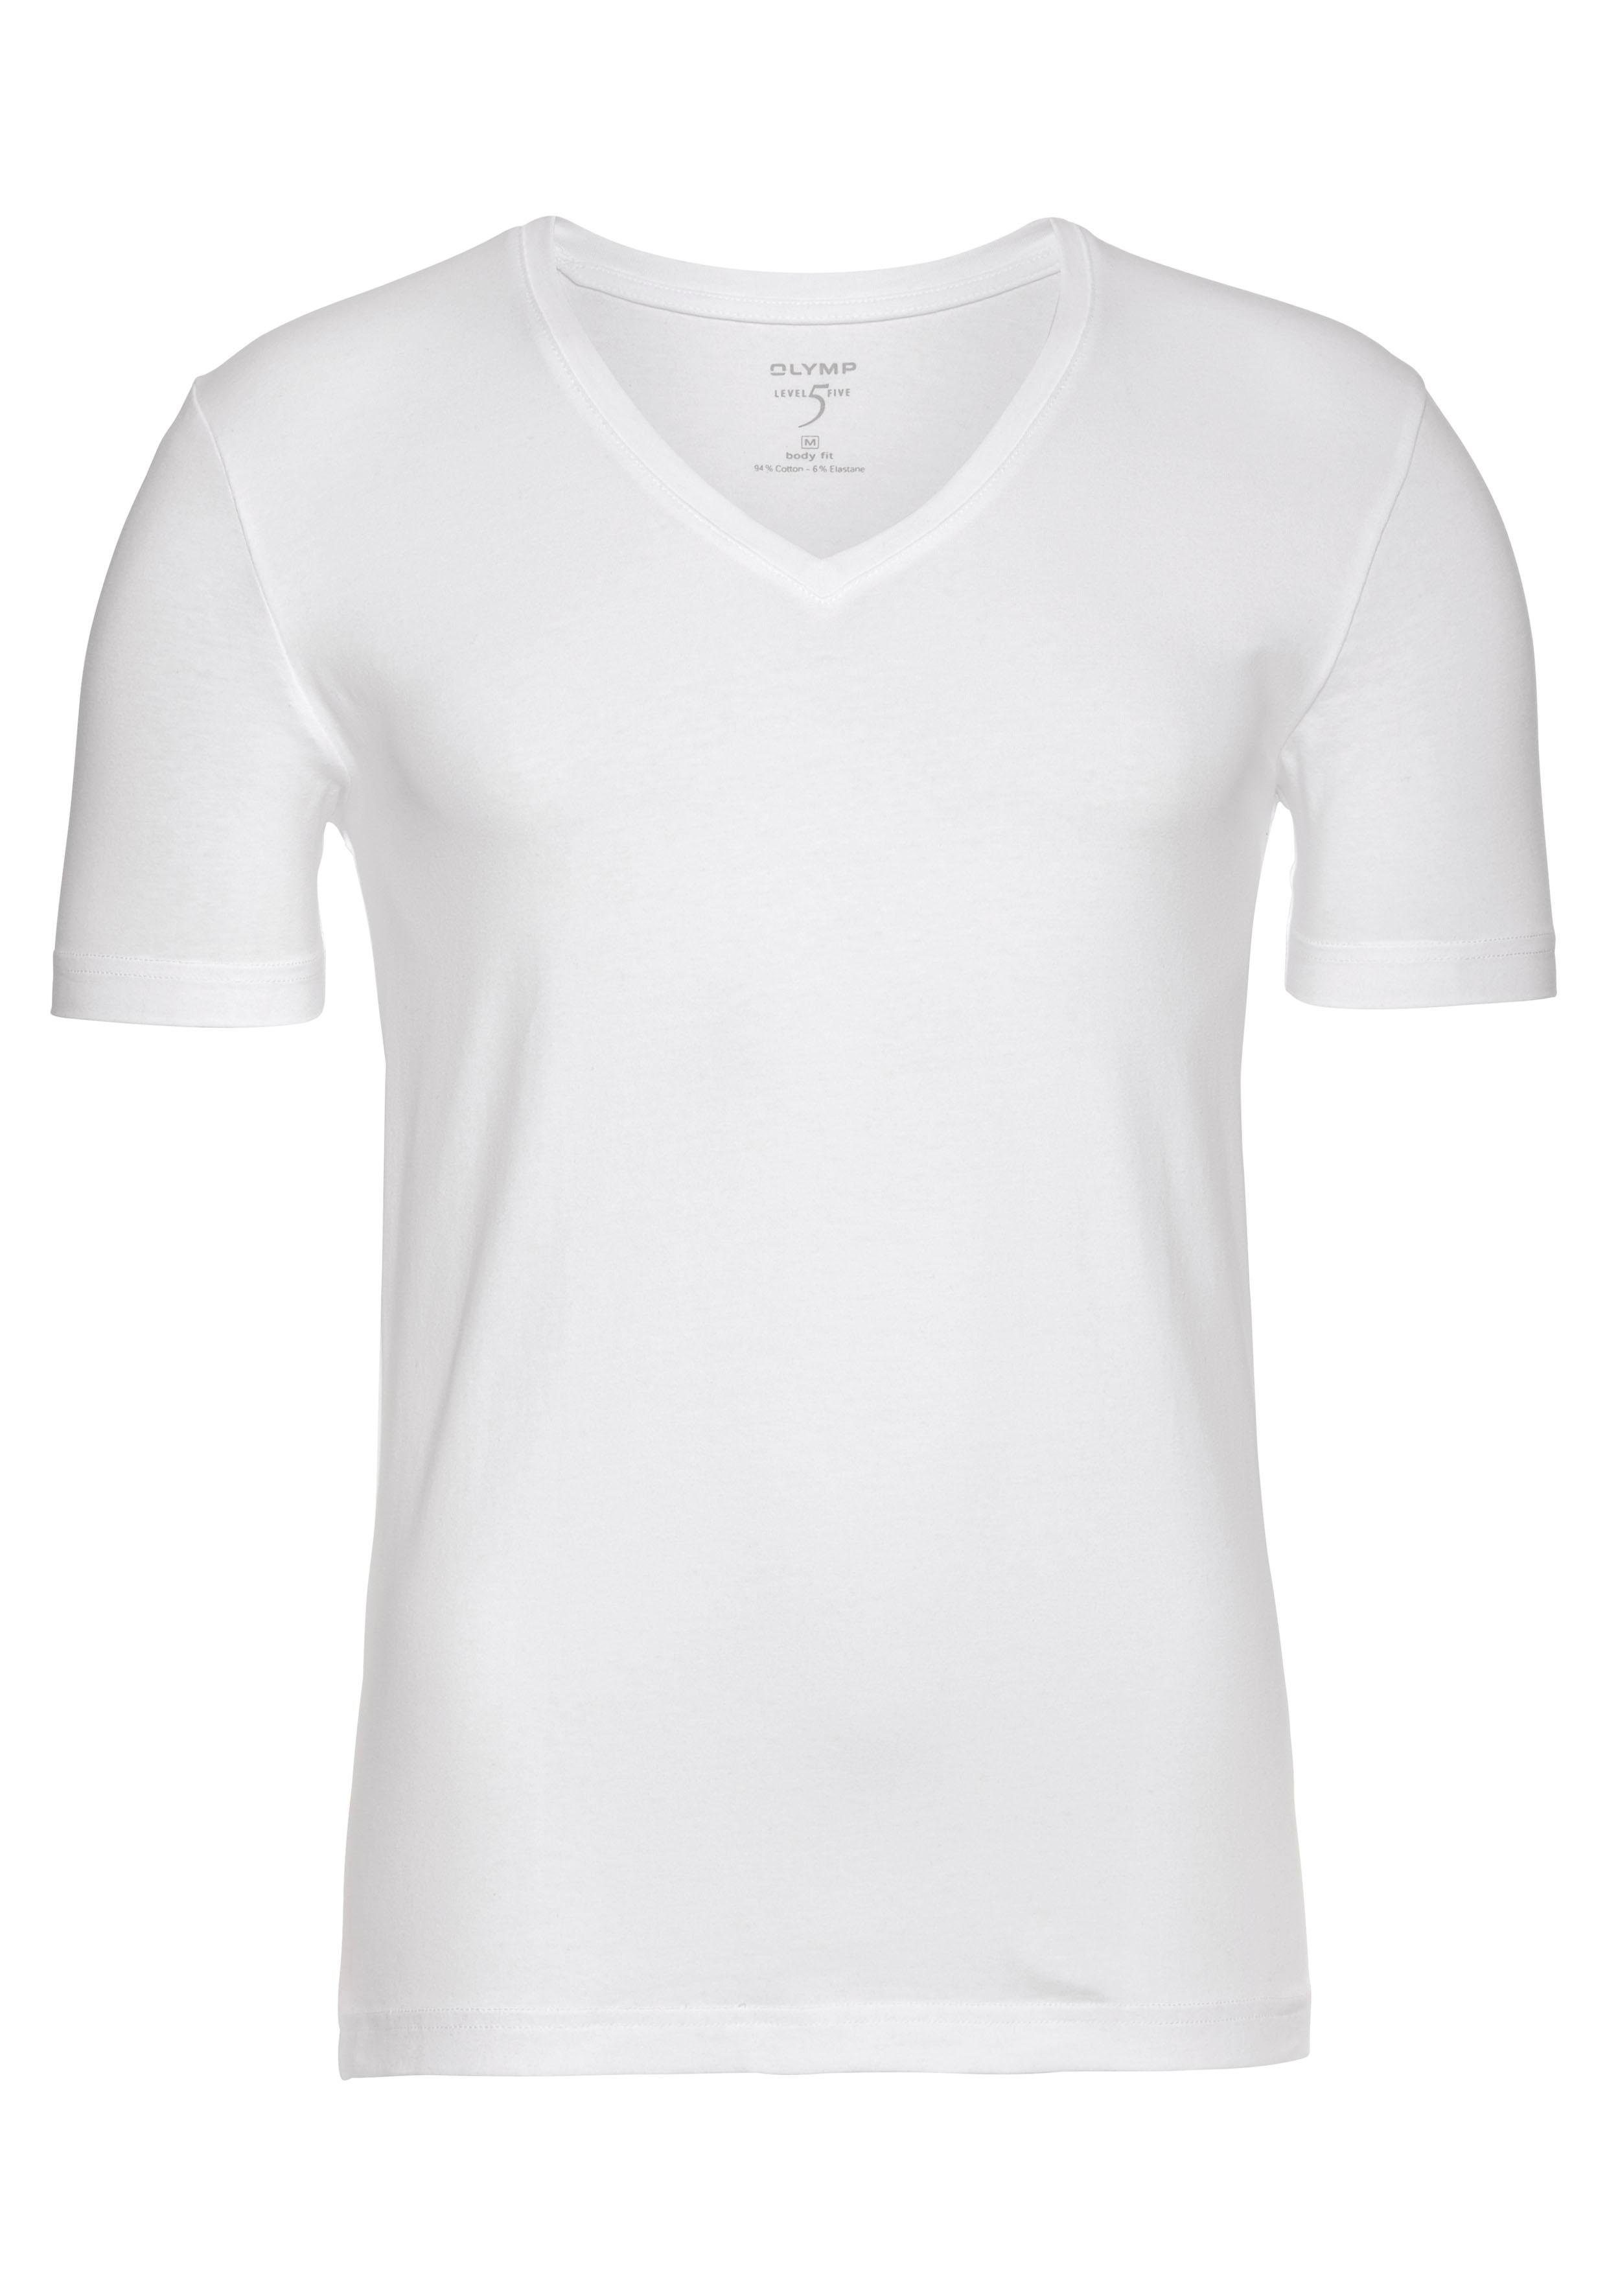 OLYMP T-Shirt »Level Five body fit« V-Ausschnitt, Ideal zum Unterziehen  online kaufen | OTTO